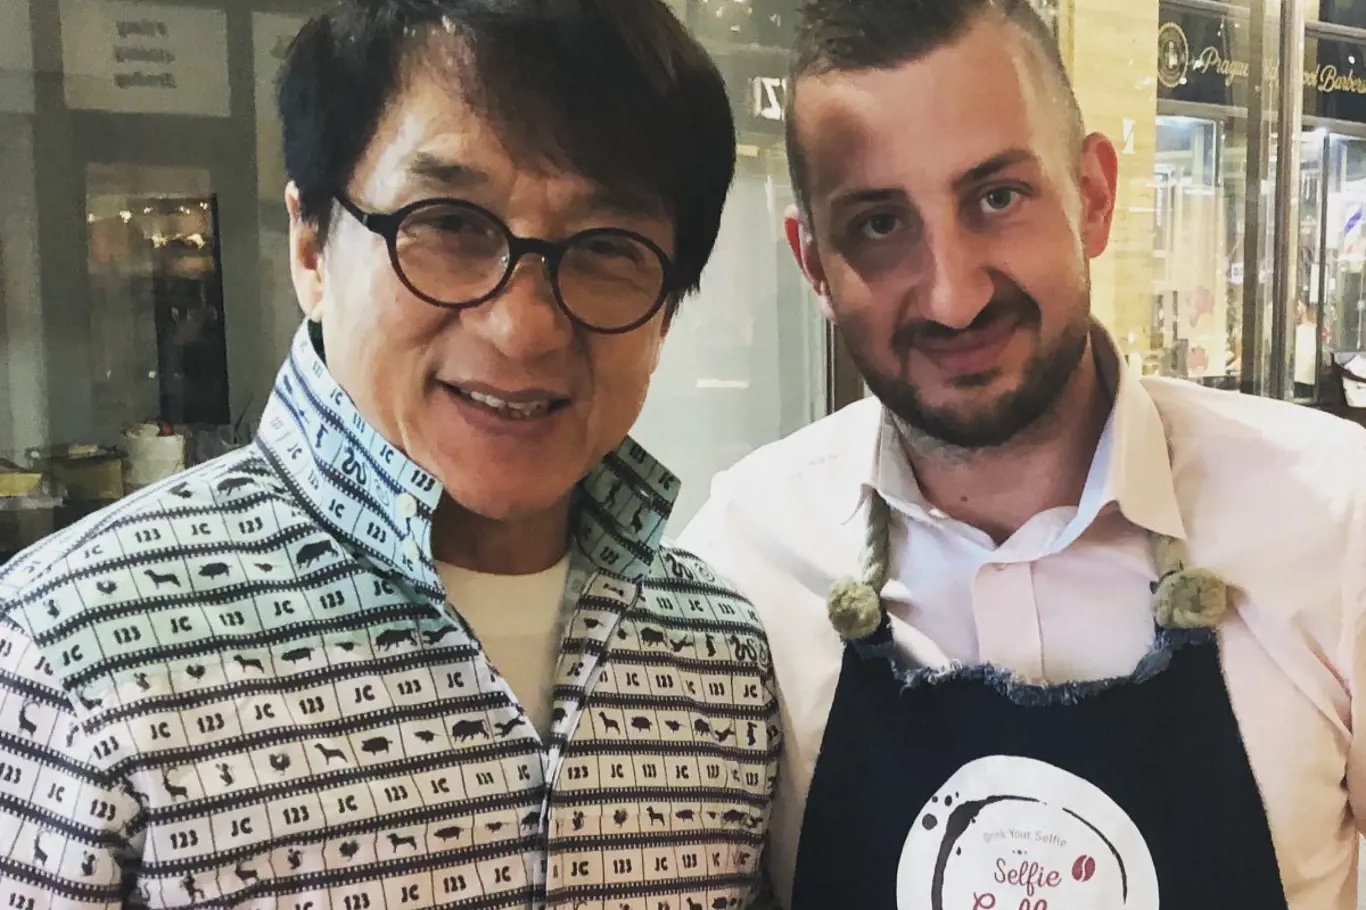 Jackie Chan při návštěvě Prahy